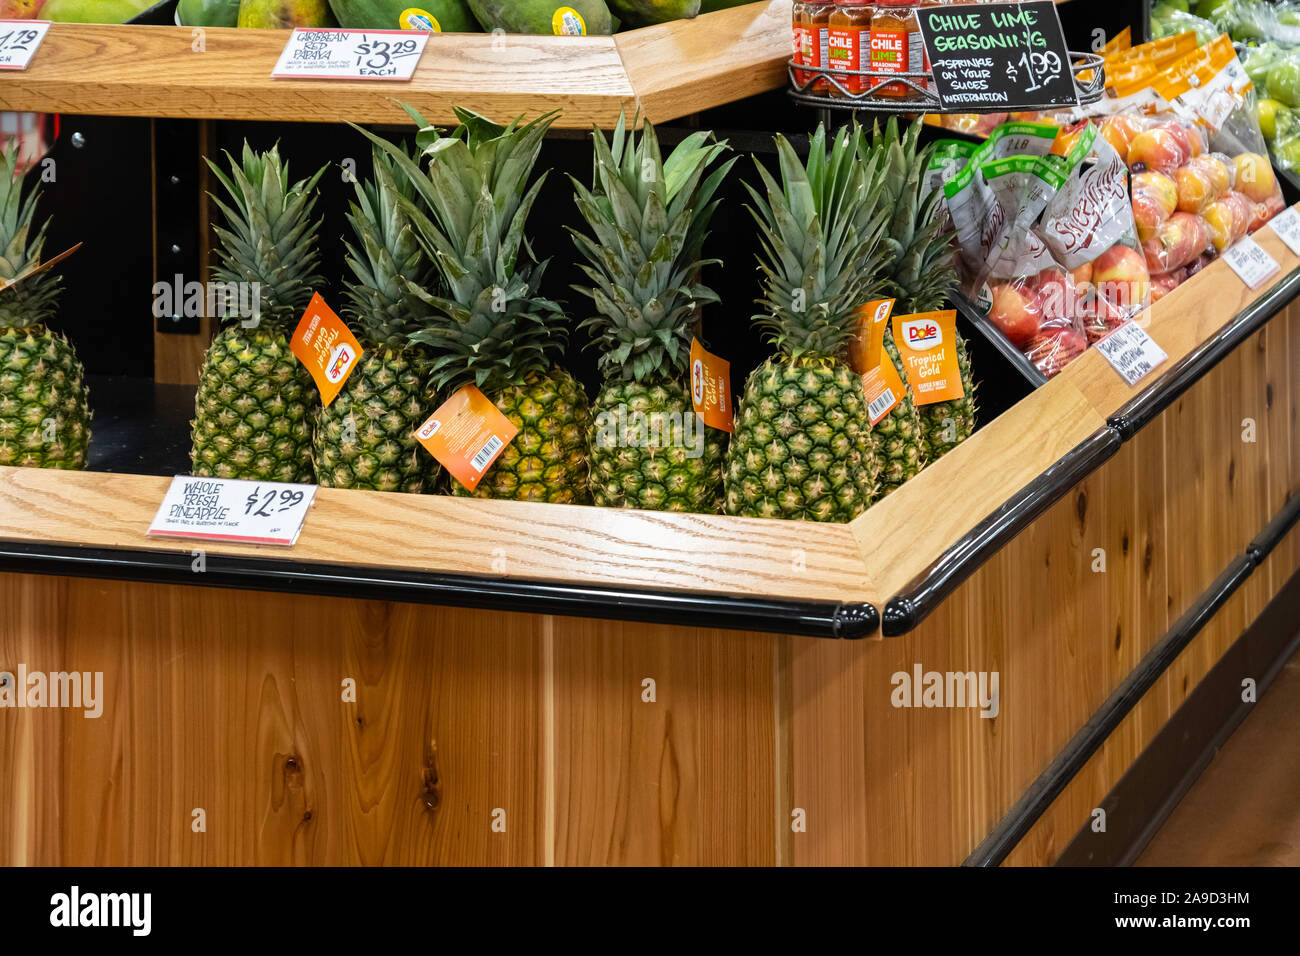 Affichage des fruits biologiques y compris les ananas dans un marché Trader Joes, Wichita, Kansas, États-Unis. Banque D'Images